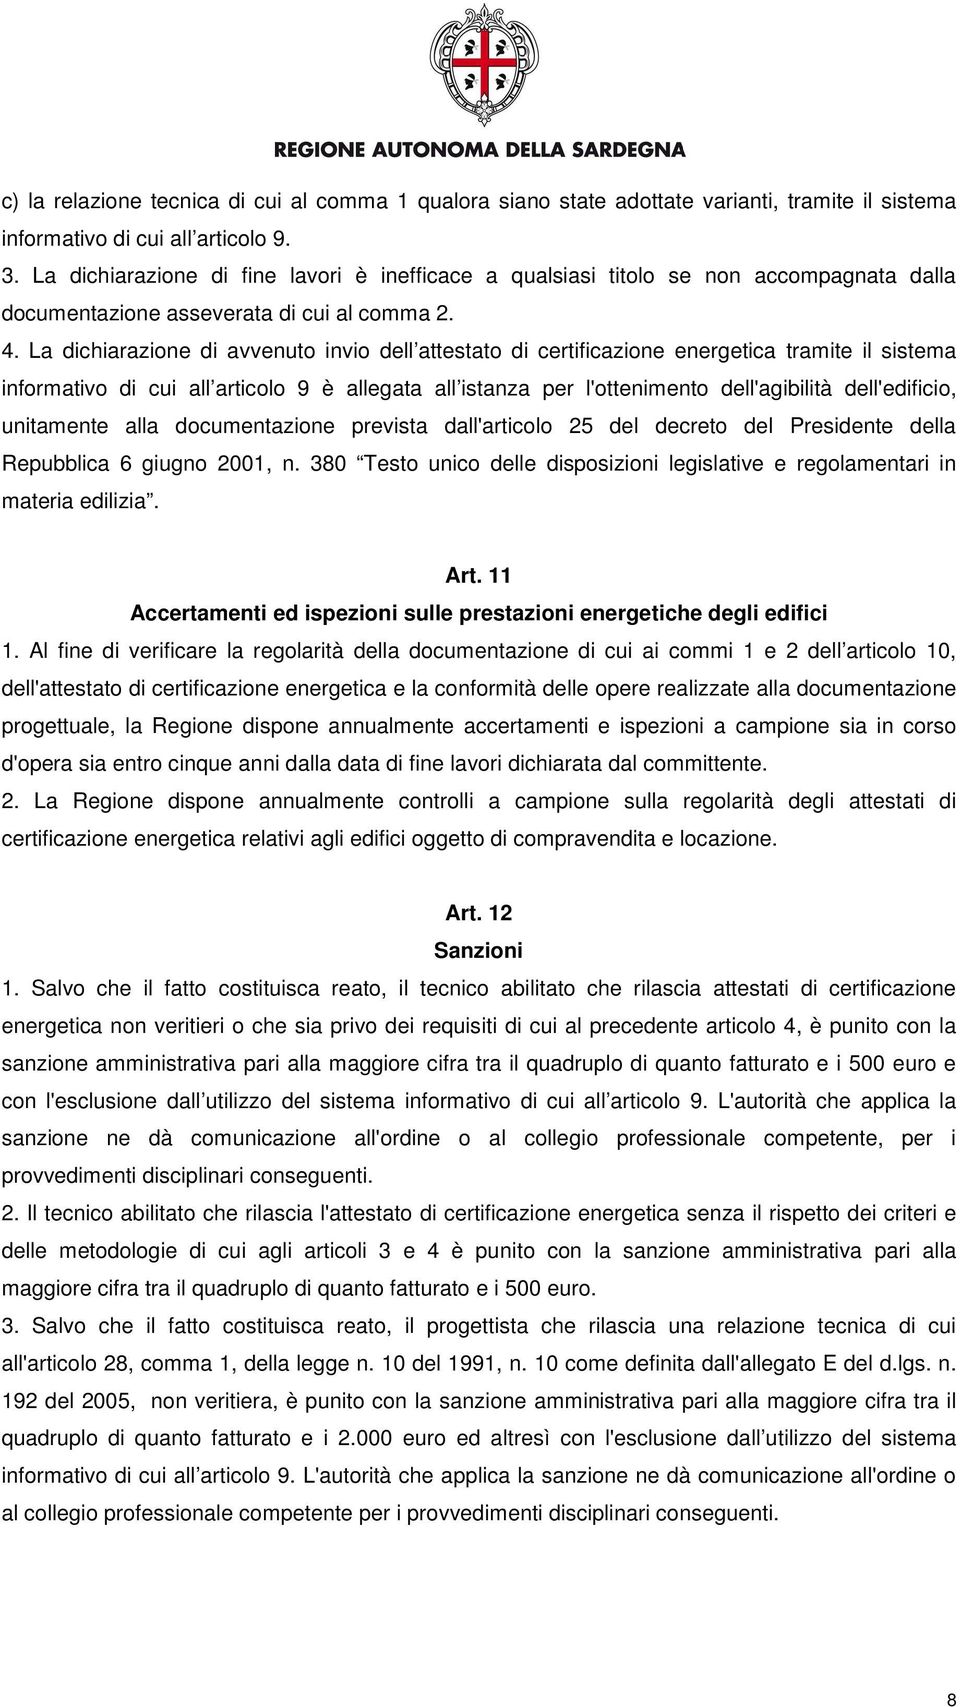 La dichiarazione di avvenuto invio dell attestato di certificazione energetica tramite il sistema informativo di cui all articolo 9 è allegata all istanza per l'ottenimento dell'agibilità